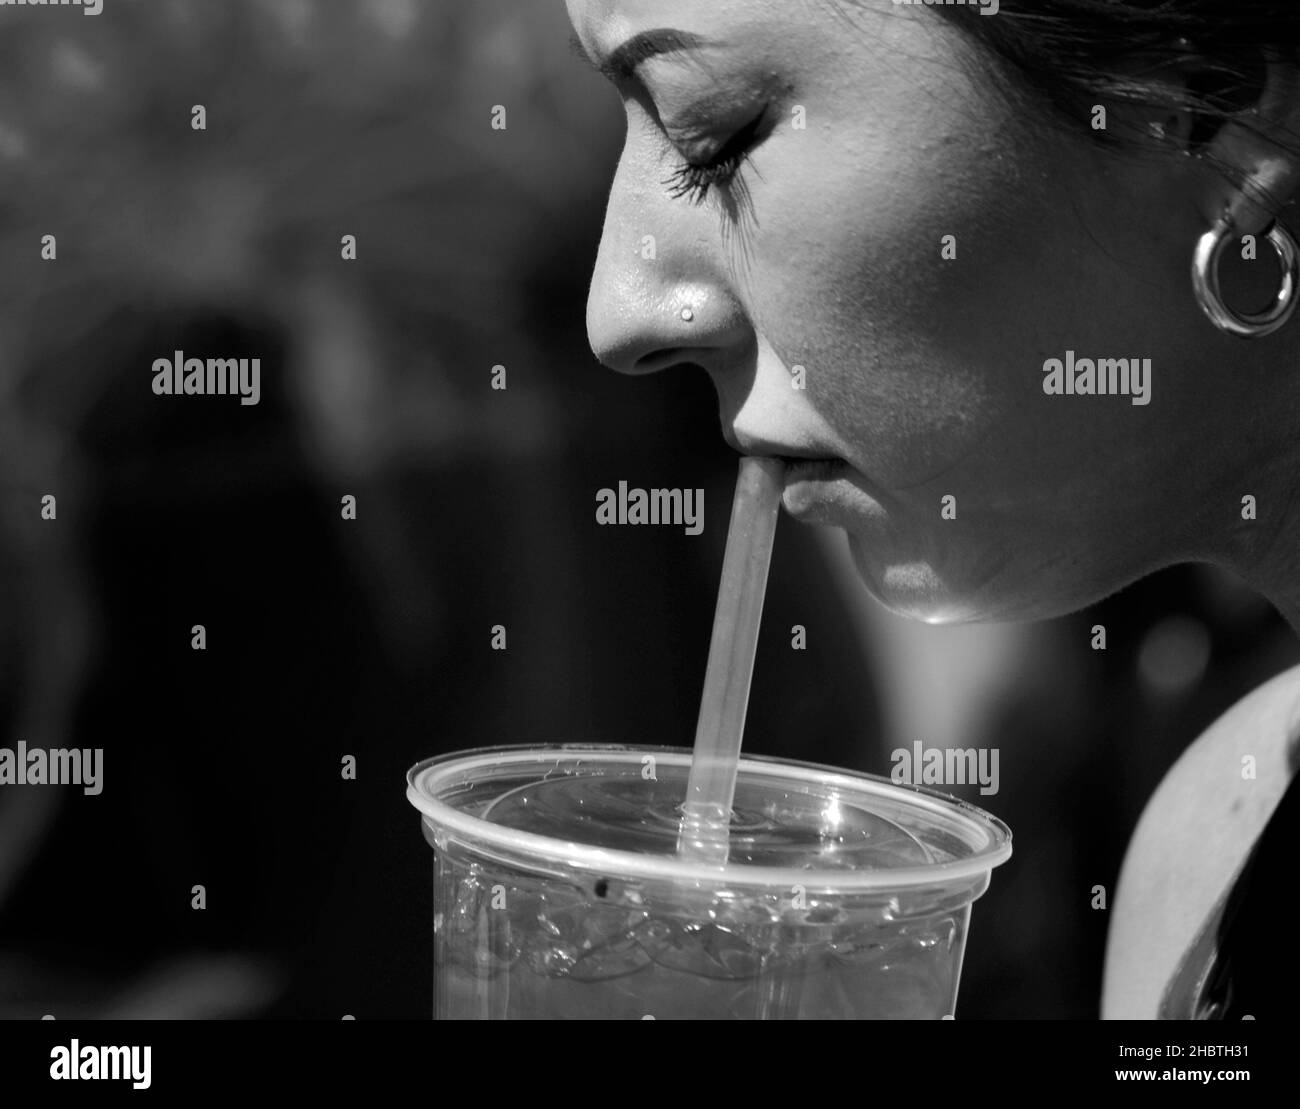 Une jeune femme boit du jus d'un contenant en plastique à l'aide d'une paille en plastique lors d'un festival à Santa Fe, Nouveau-Mexique. Banque D'Images